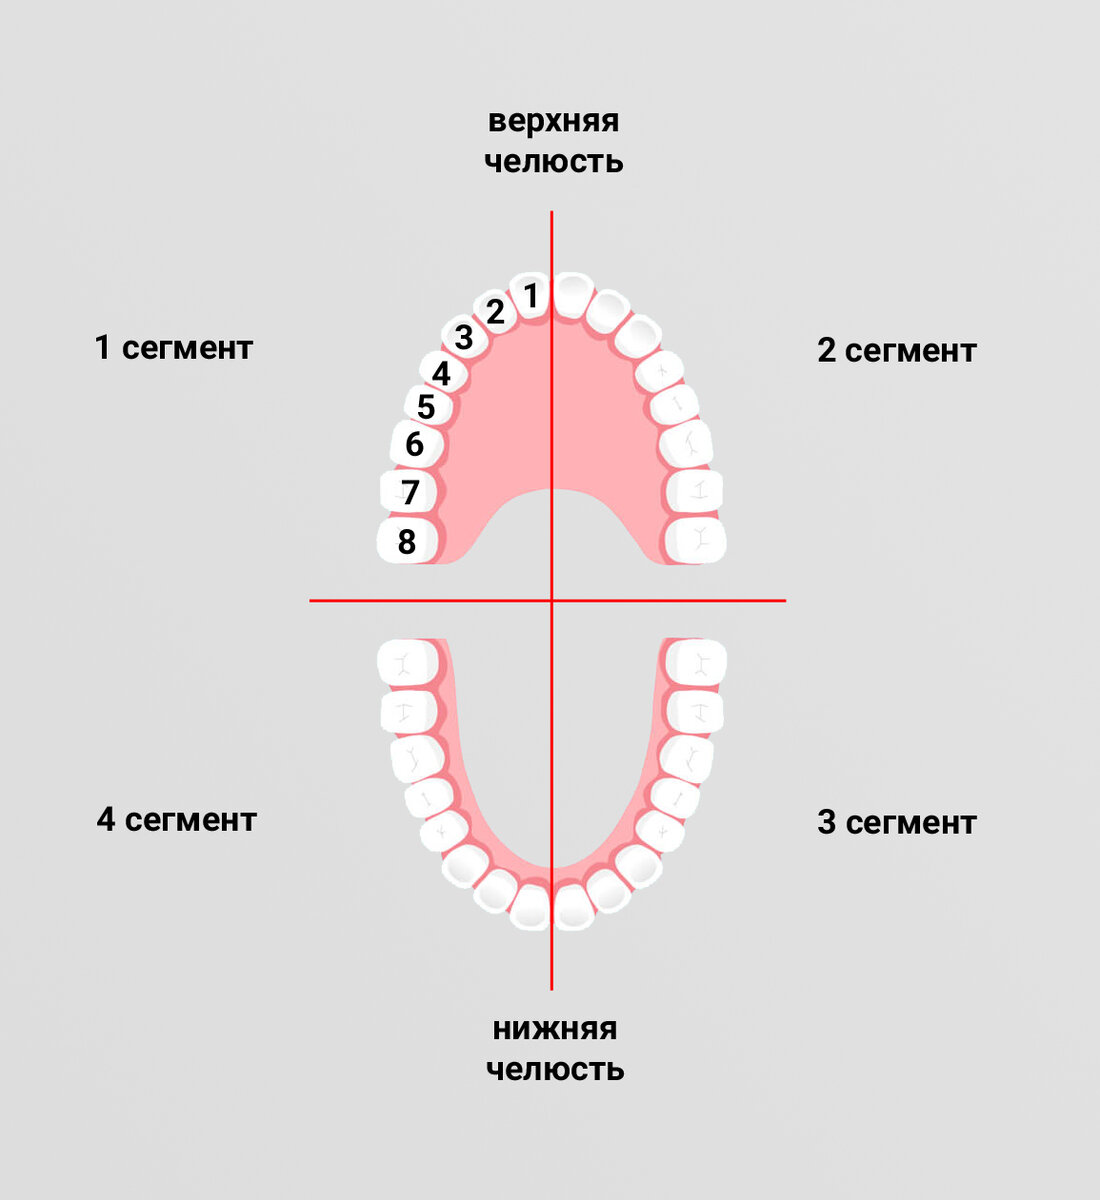 Верхний второй зуб